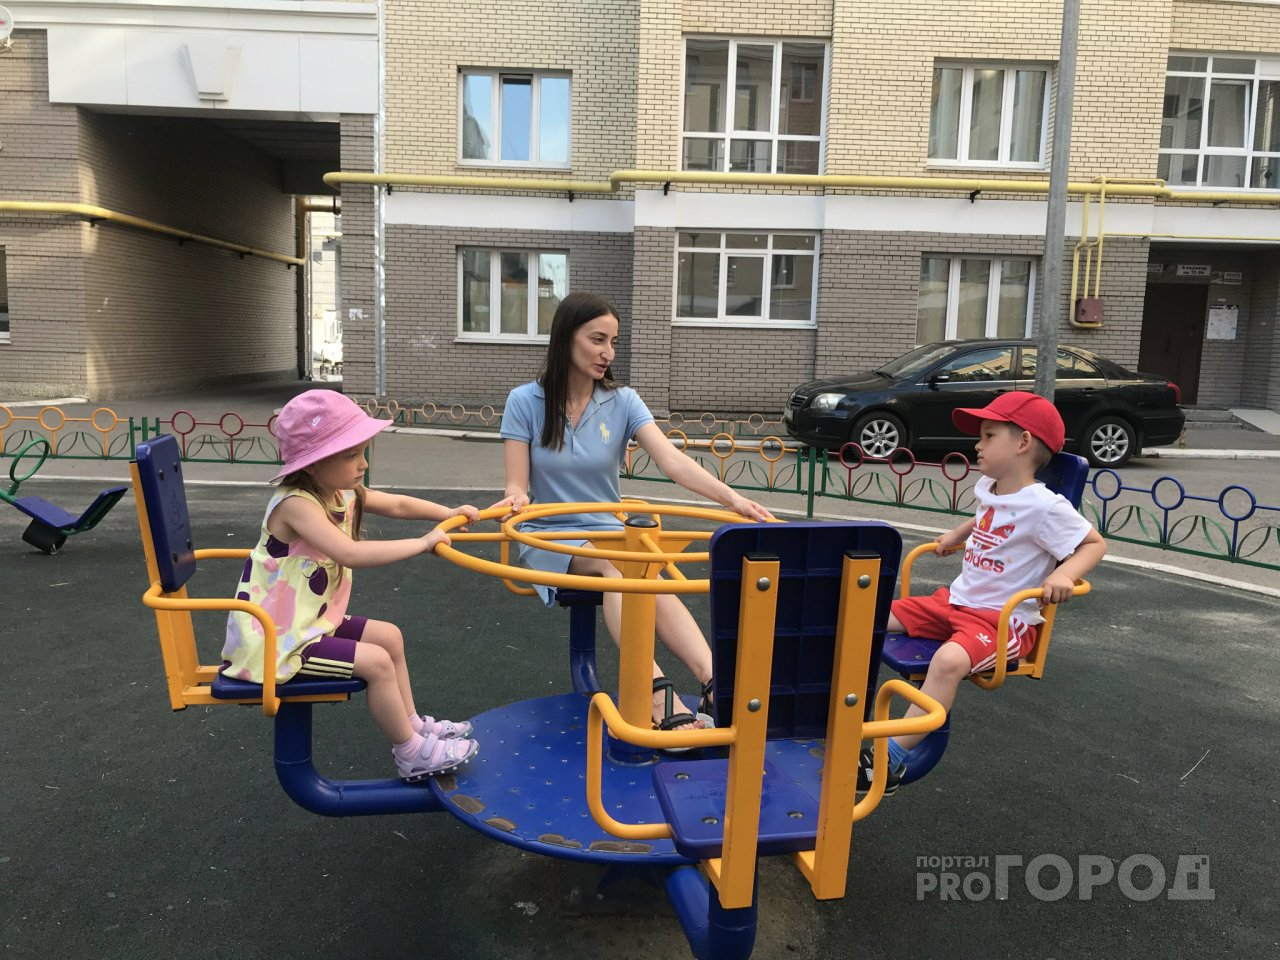 Приставы забрали пособие в 10 тысяч рублей на детей у матери-одиночки